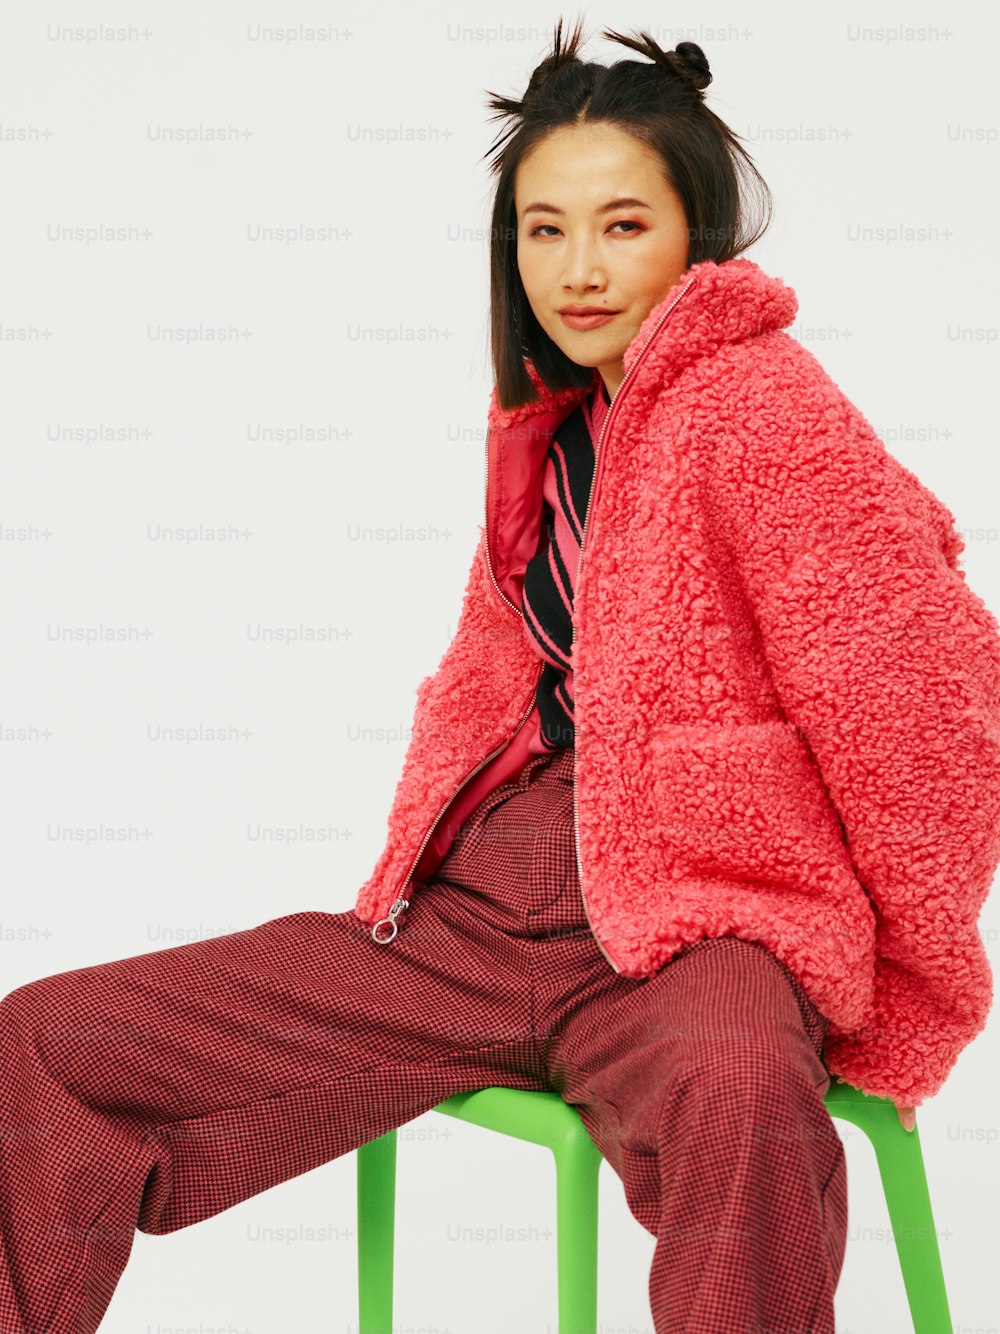 빨간 재킷을 입고 의자에 앉아 있는 여성